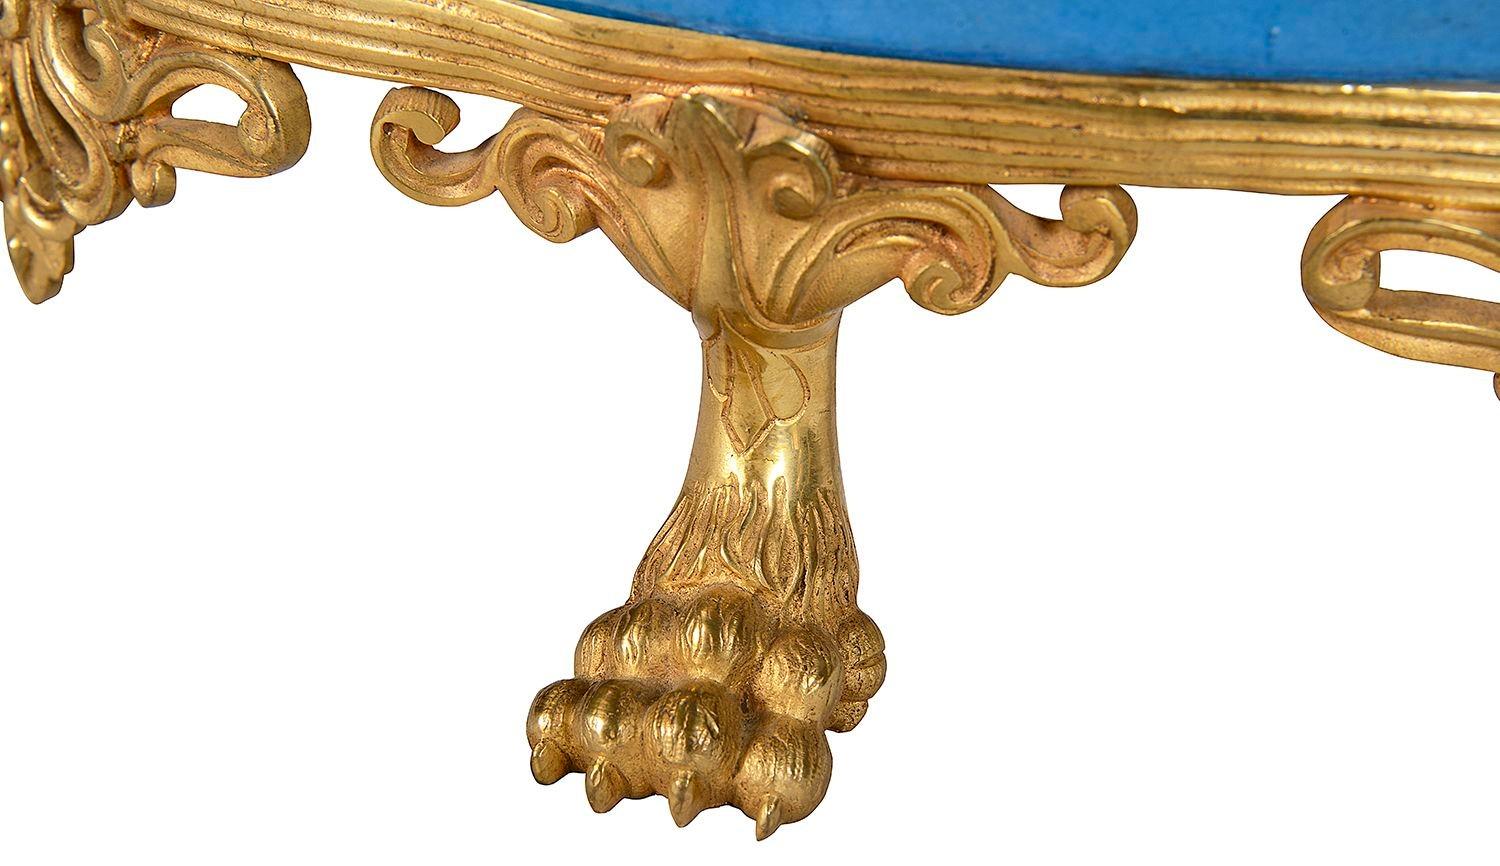 Compas en porcelaine de Sèvres de bonne qualité, datant de la fin du 19e siècle, à fond turquoise avec un panneau peint à la main représentant une scène romanesque de couples en train de se faire la cour, avec des bordures dorées et des montures en